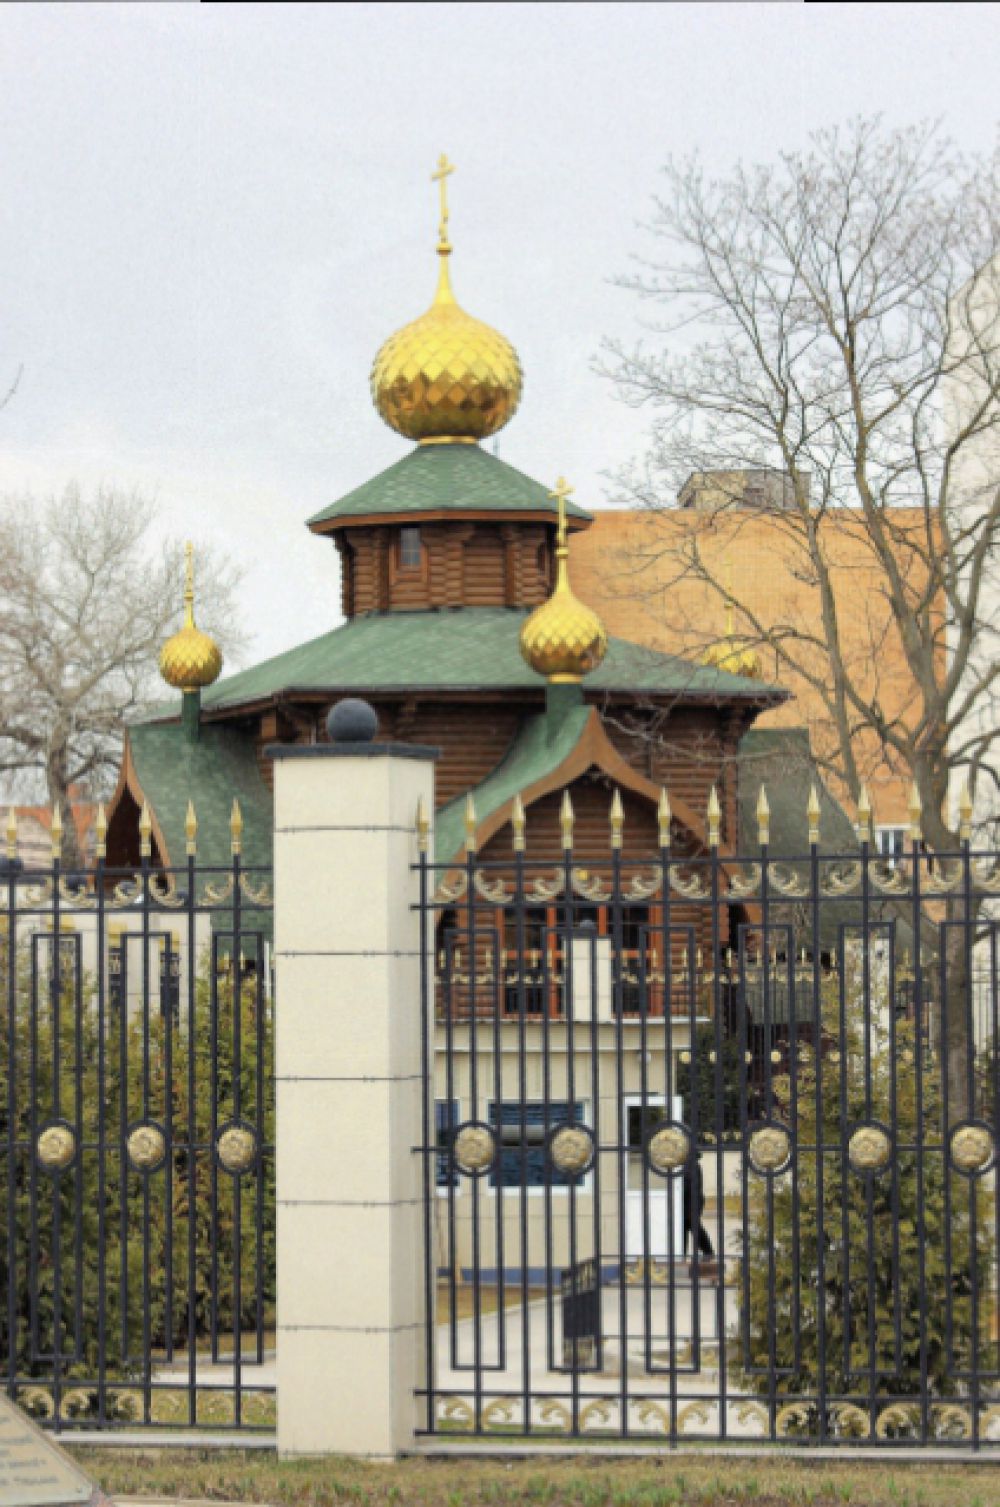  Храм во имя святого равноапостольного князя Владимира (купол, колокол и сам храм)